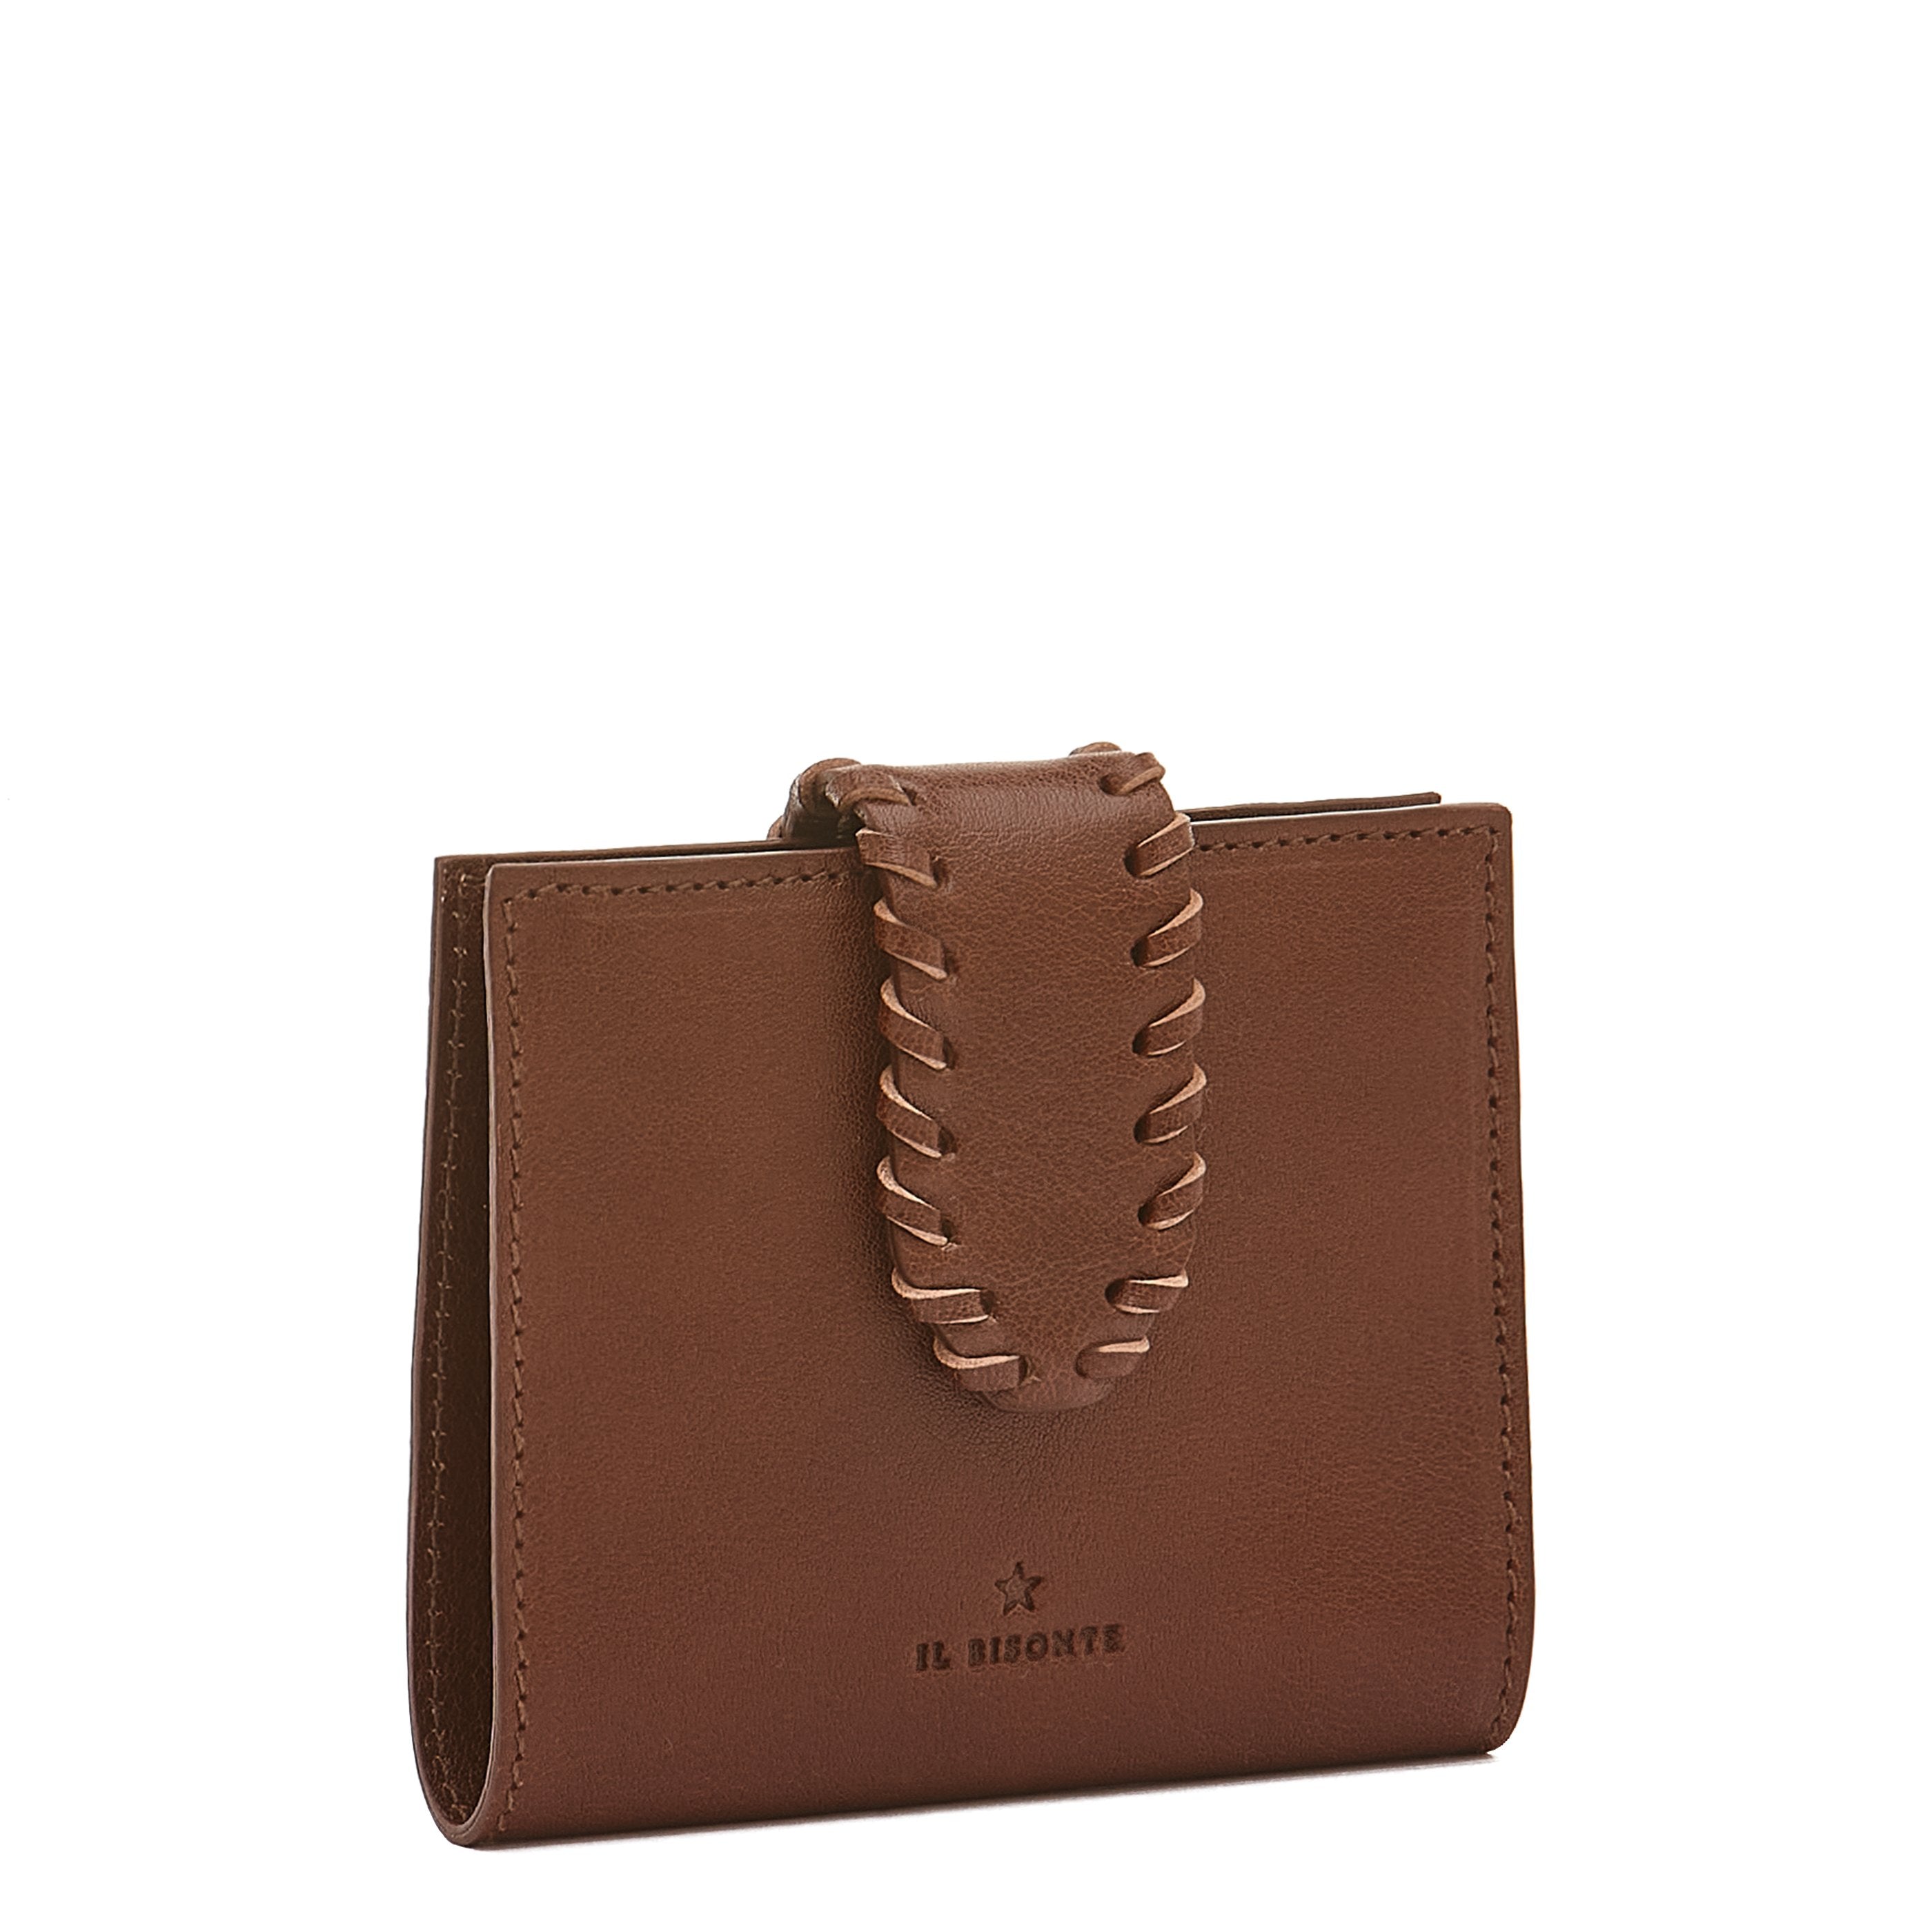 La fiaba | Women's small wallet in leather color arabica